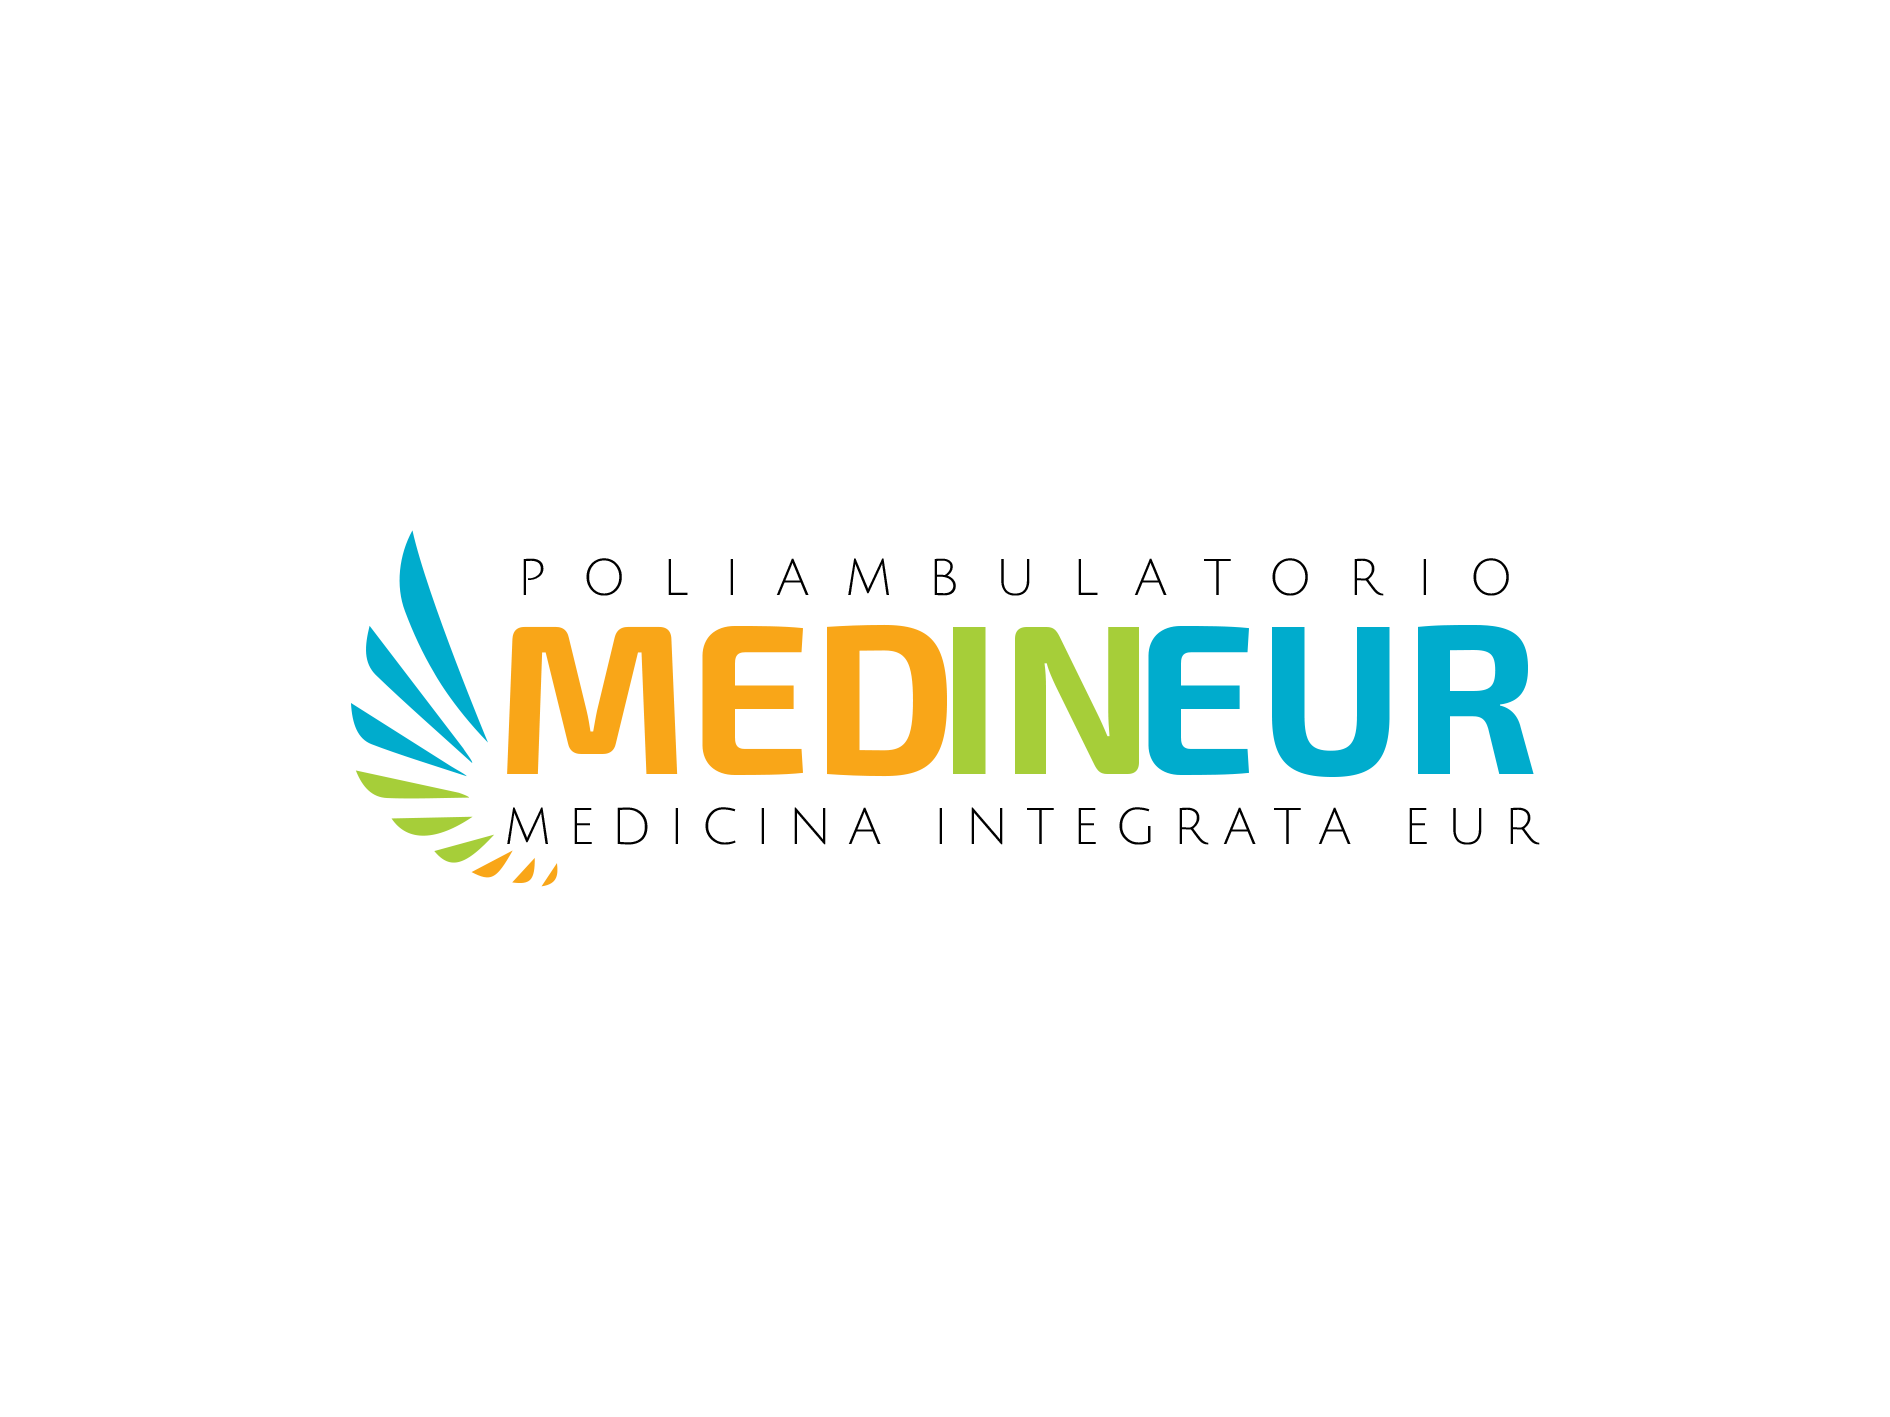 Medineur